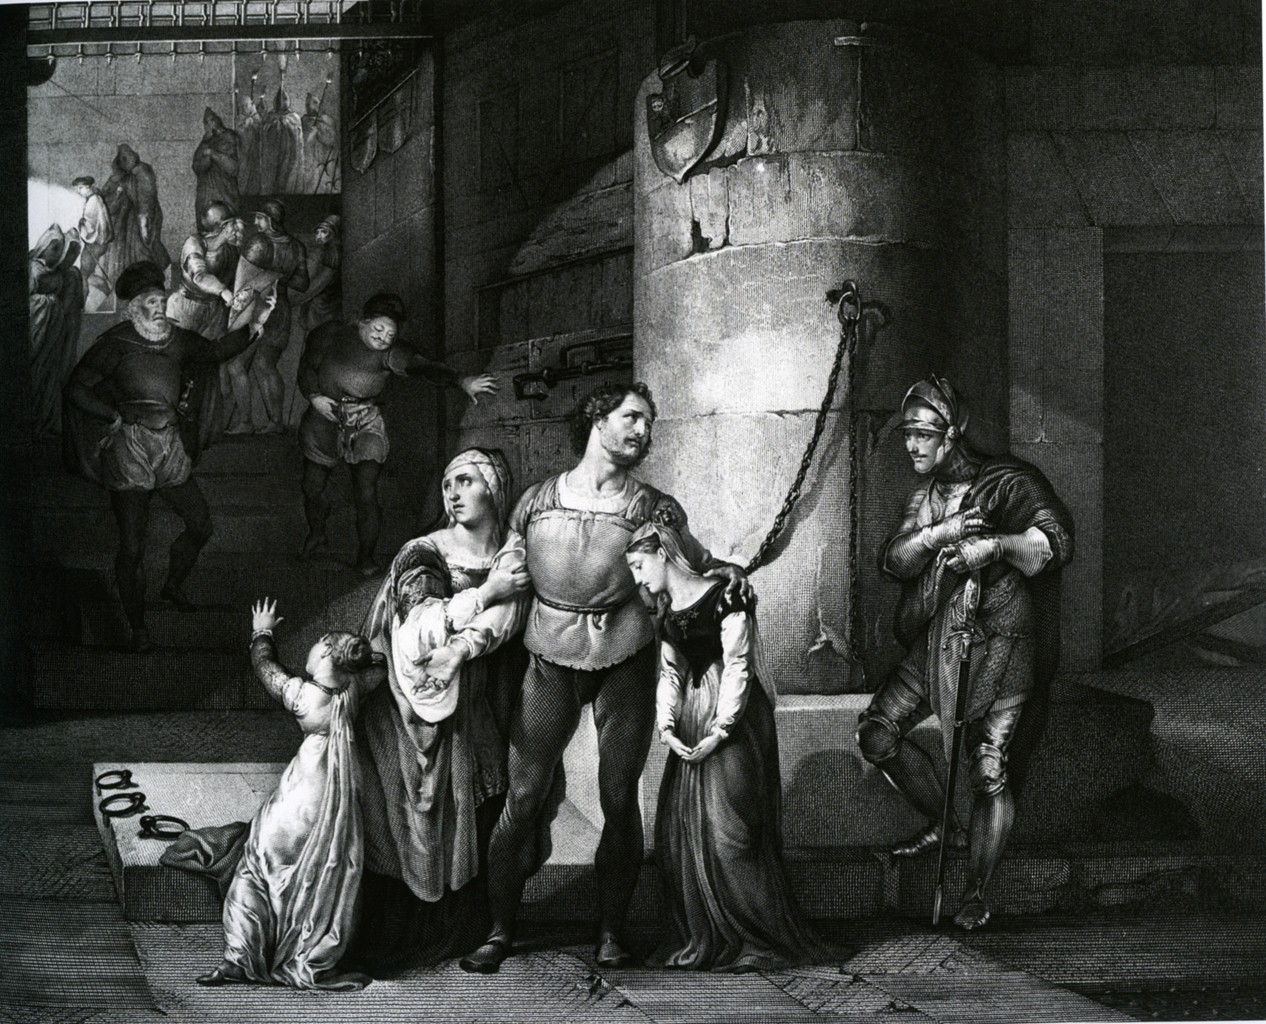  L'estremo giorno del conte di Carmagnola, 1834-1838, incisione a bulino su rame, 685 x 815 mm (445 x 538 mm battuta), Biblioteca Nazionale Braidense, Fondo Manzoniano, Milano.